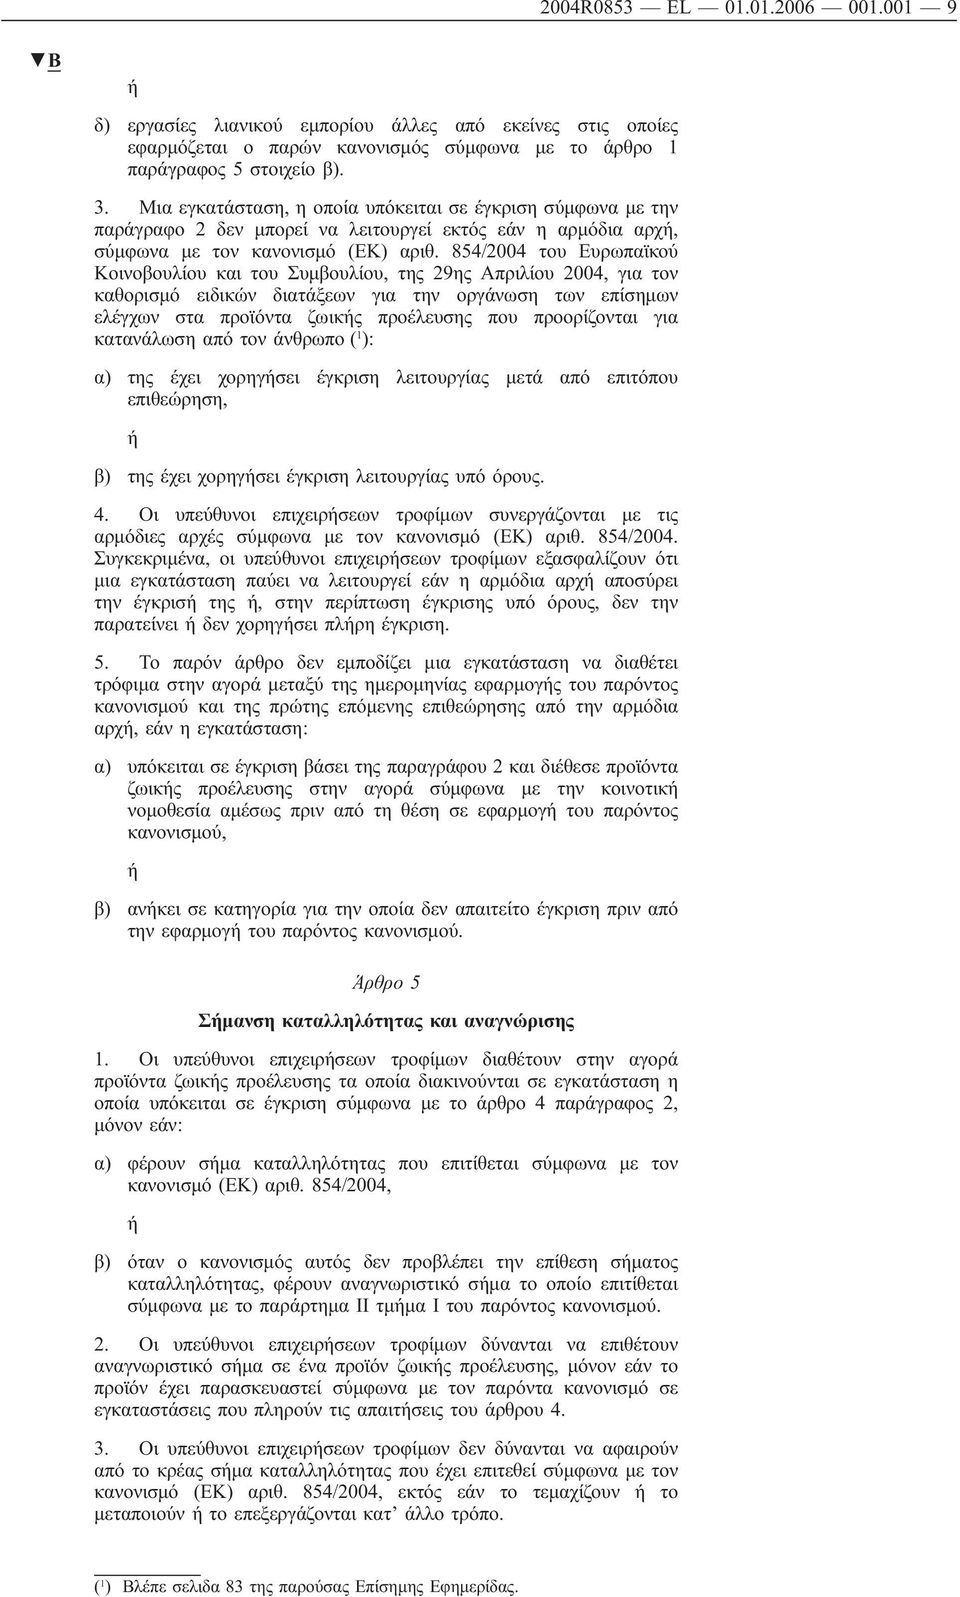 854/2004 του Ευρωπαϊκού Κοινοβουλίου του Συμβουλίου, της 29ης Απριλίου 2004, για τον καθορισμό ειδικών διατάξεων για την οργάνωση των επίσημων ελέγχων στα προϊόντα ζωικής προέλευσης που προορίζονται